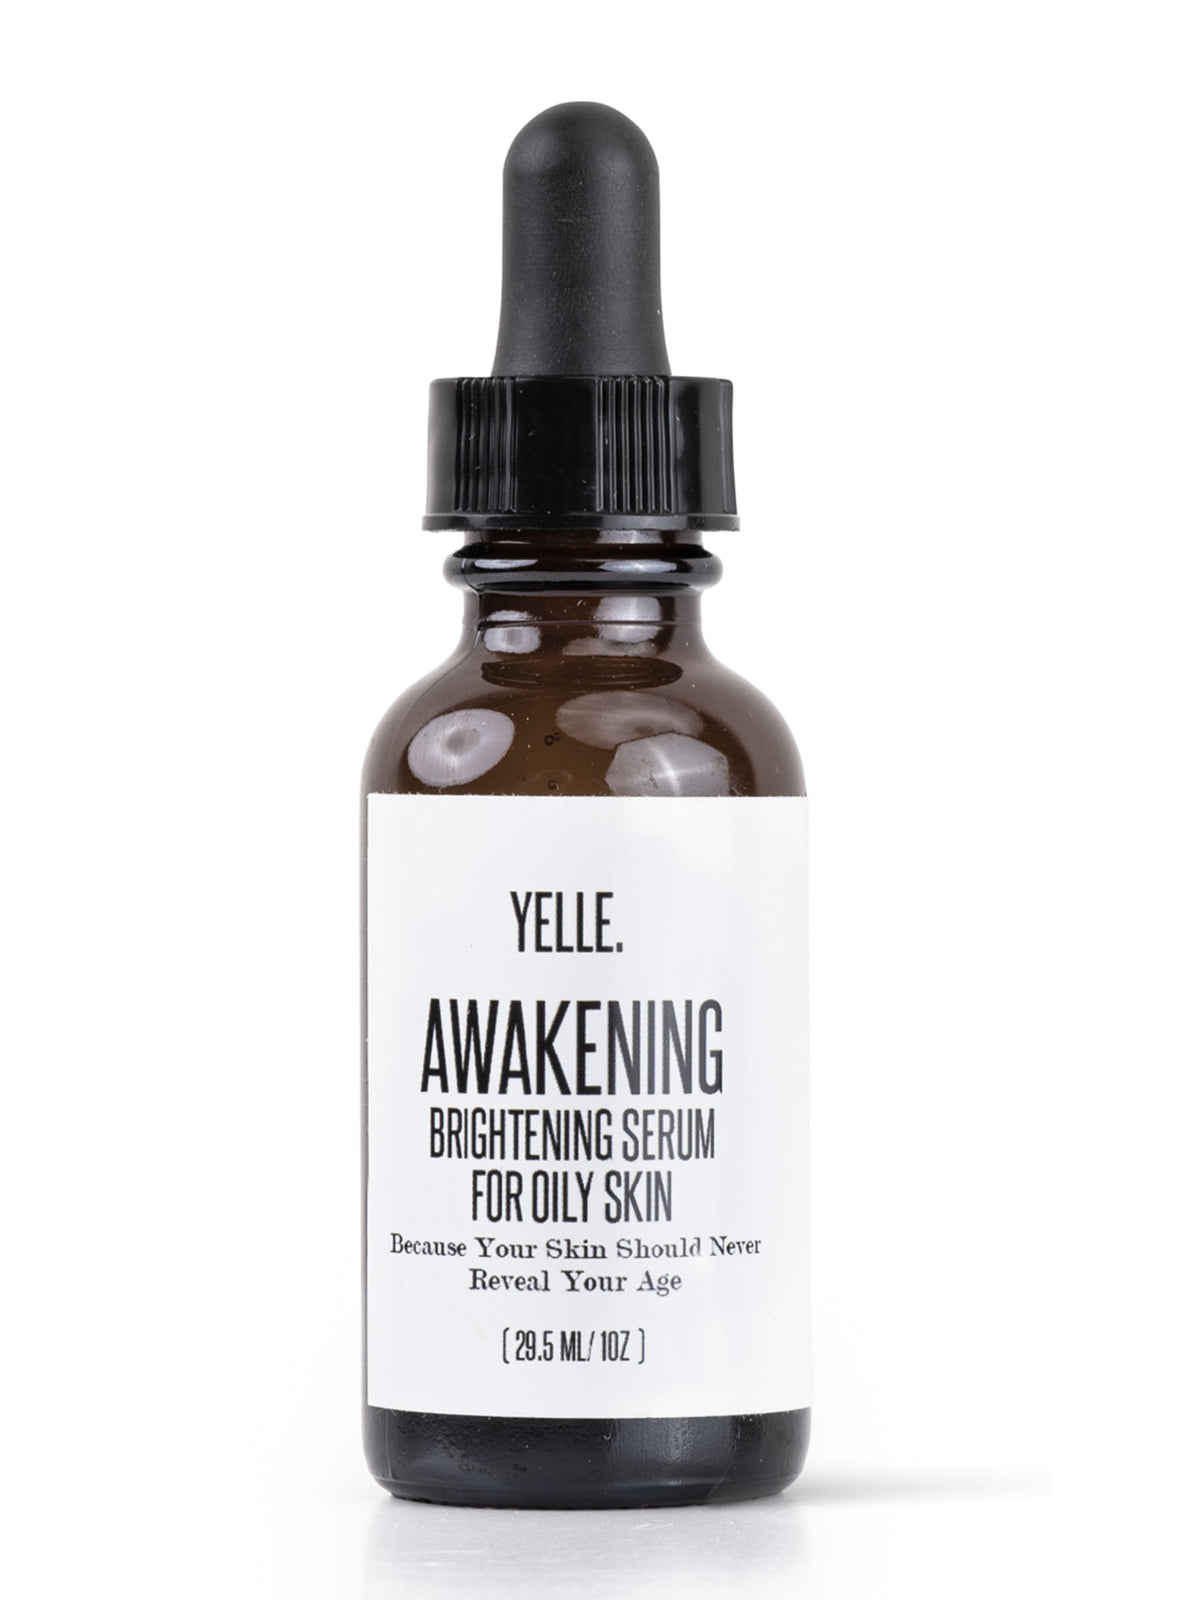 Awakening Brightening Serum for Oily Skin